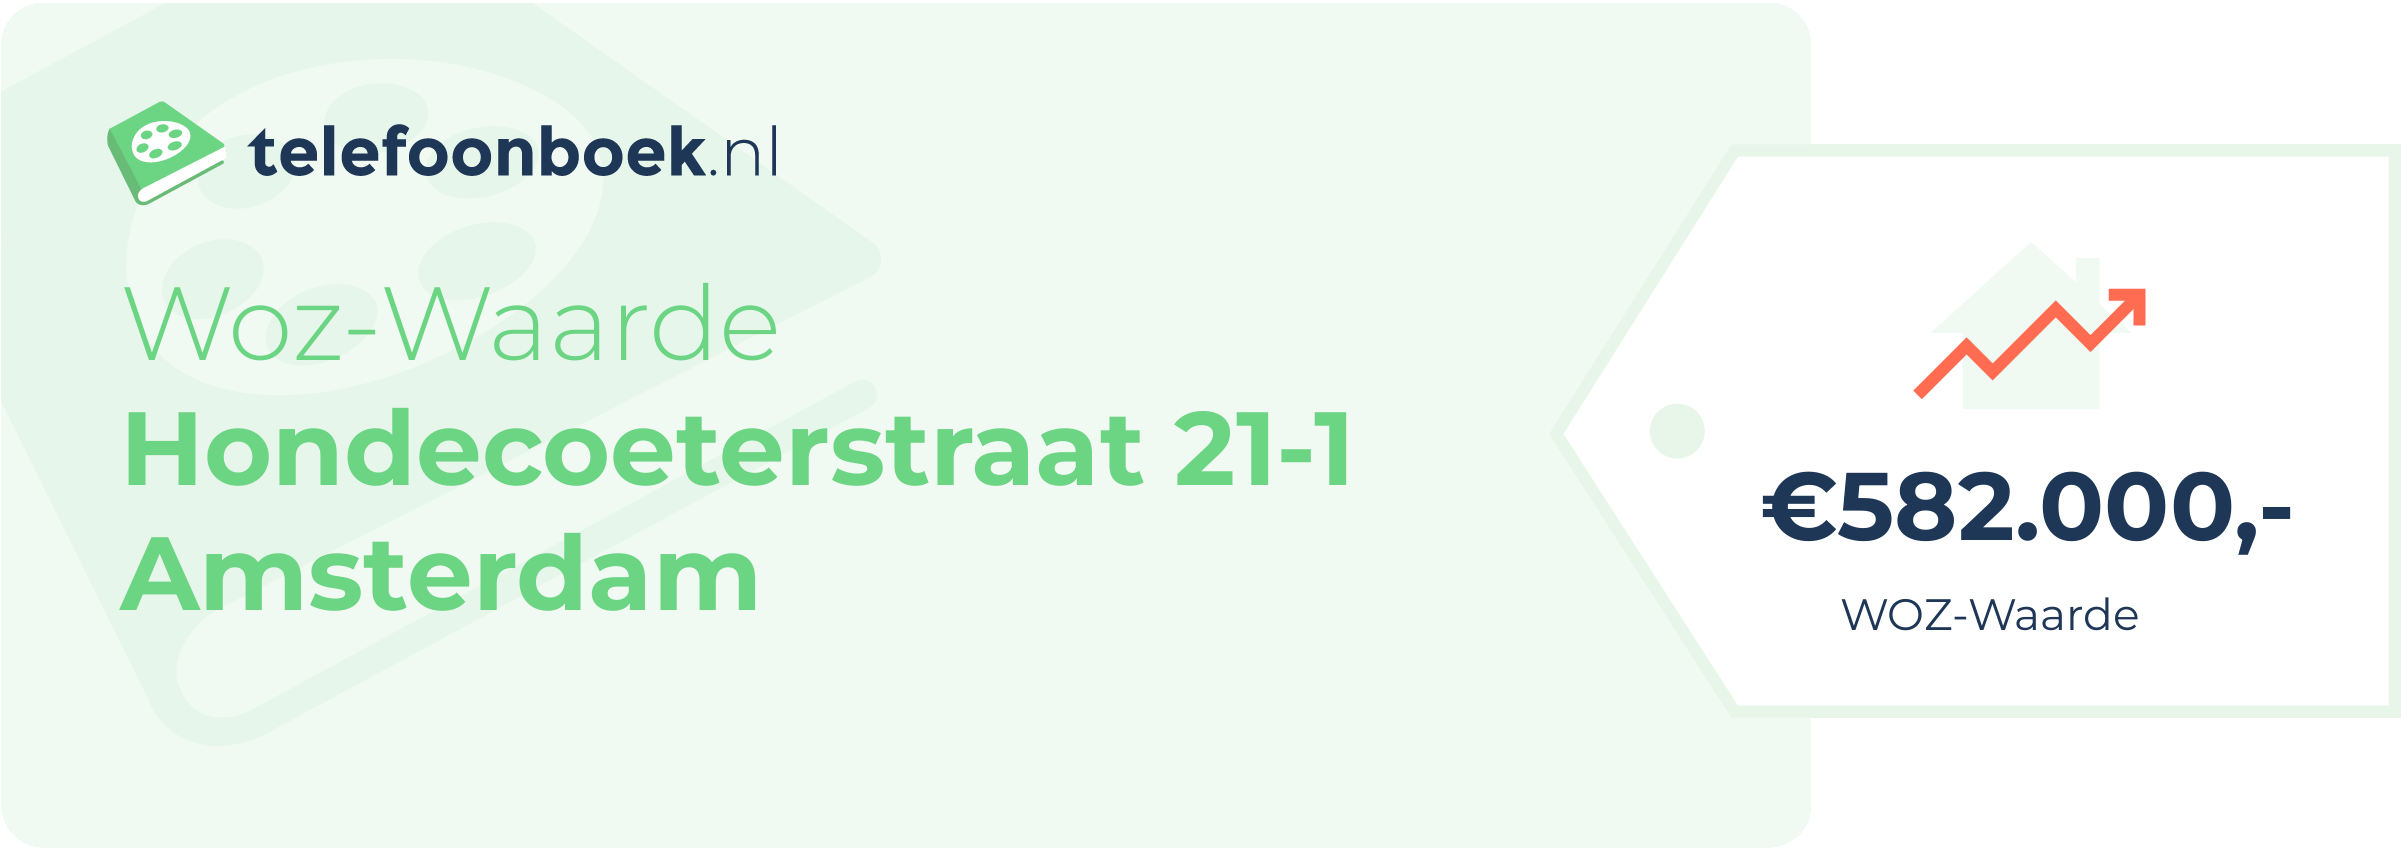 WOZ-waarde Hondecoeterstraat 21-1 Amsterdam